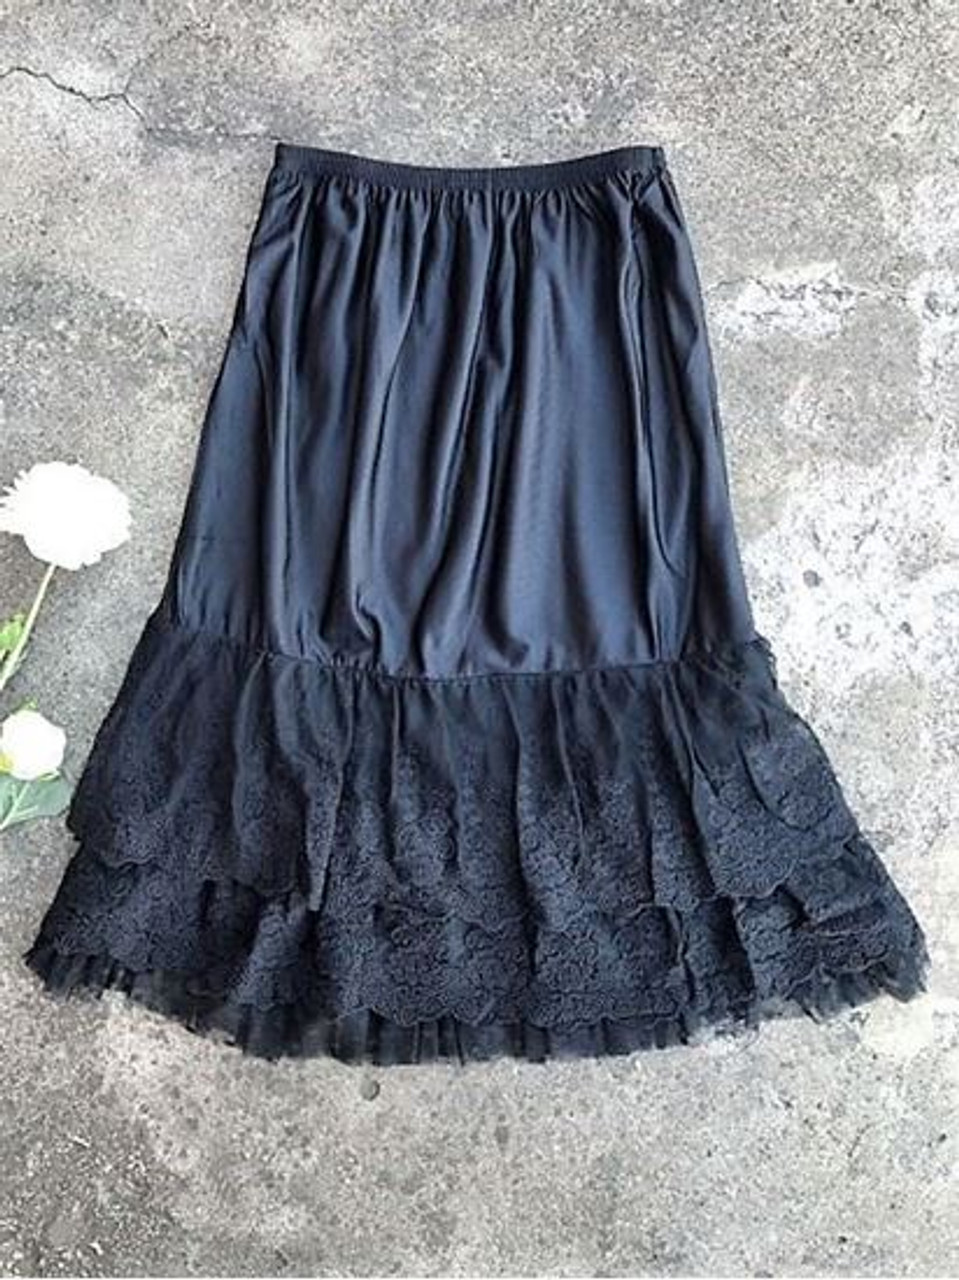 Skirt Slip Extender Lace Dot Mesh Black